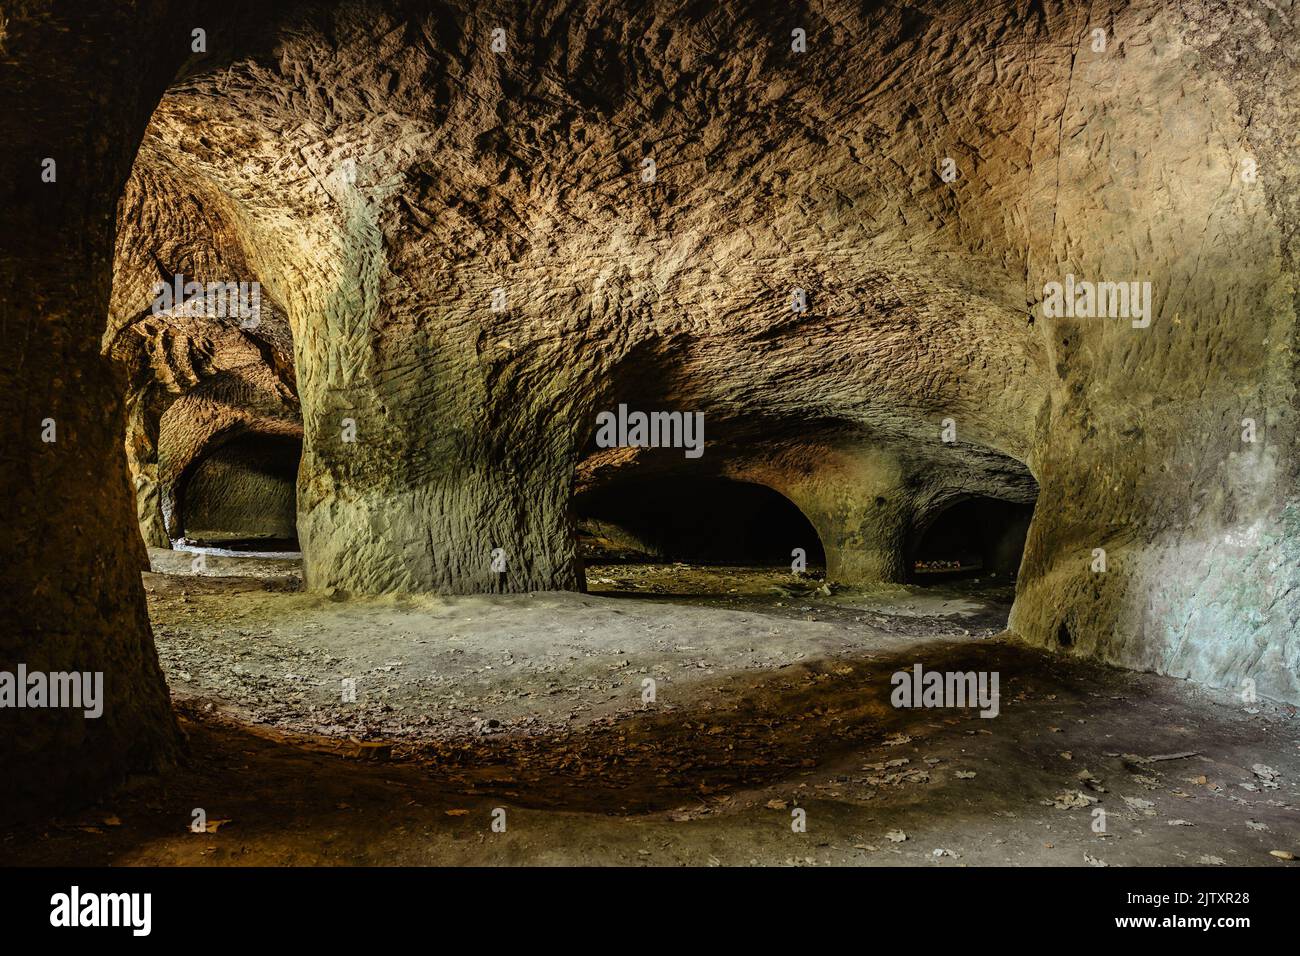 Höhlensystem in Sandsteinfelsen genannt Puste kostely in der Nähe von Novy Bor, Tschechische republik.großer unterirdischer Steinbruch.Beliebte Touristenattraktion.geheimnisvoll Stockfoto